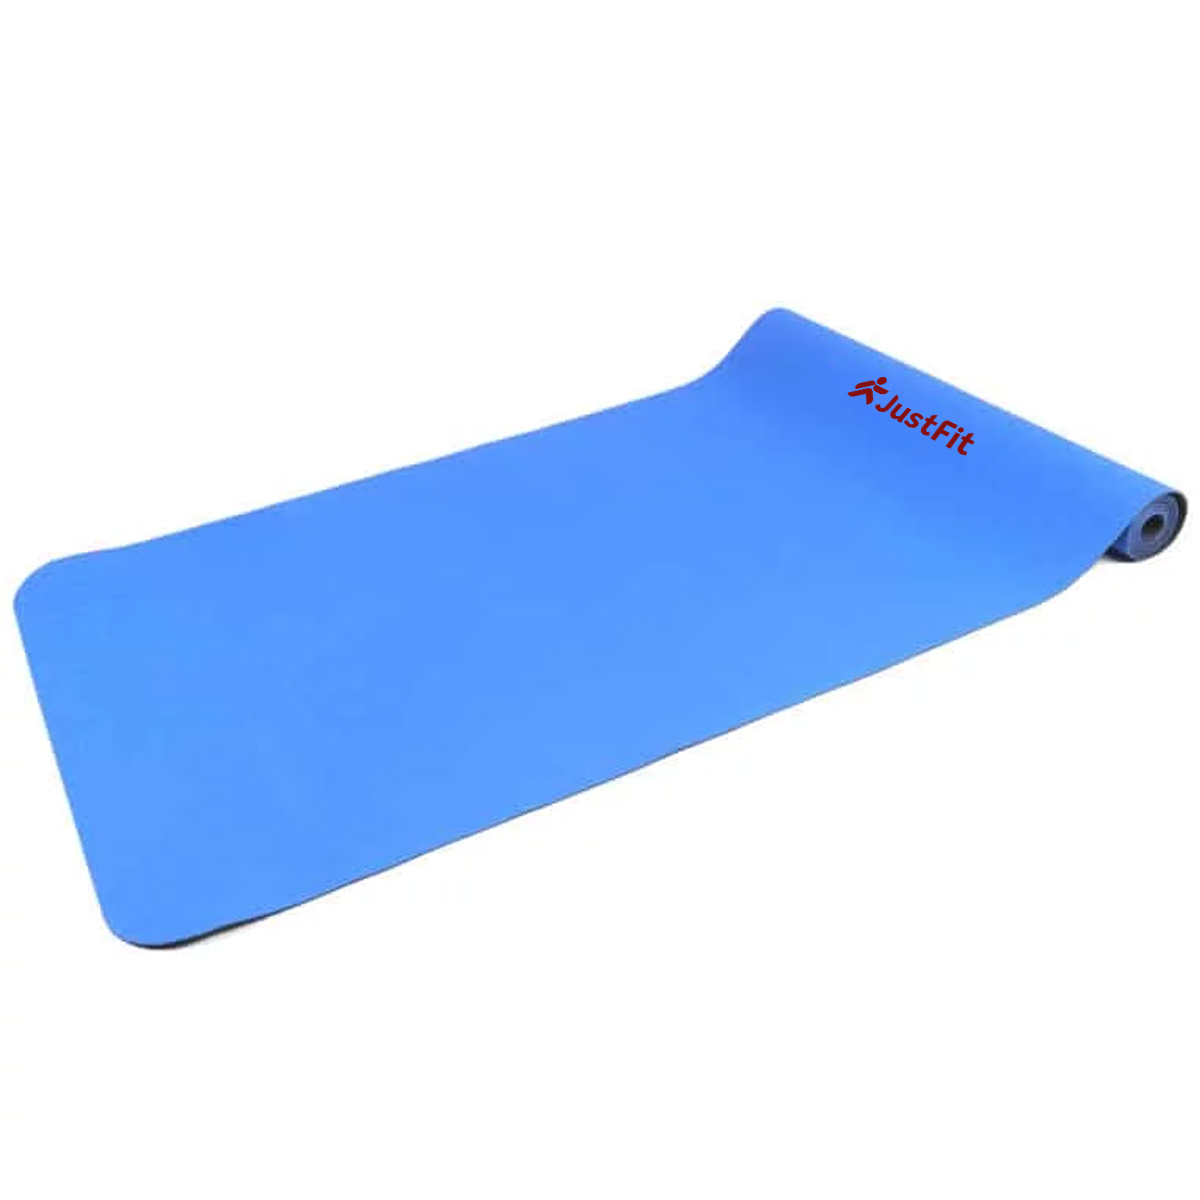 Gloop Tapis de yoga de haute qualité avec sangle de transport Format XXL  Tapis pour Pilates, gymnastique, fitness et yoga, Adulte (unisexe), bleu,  190x60x1.50 cm en destockage et reconditionné chez DealBurn